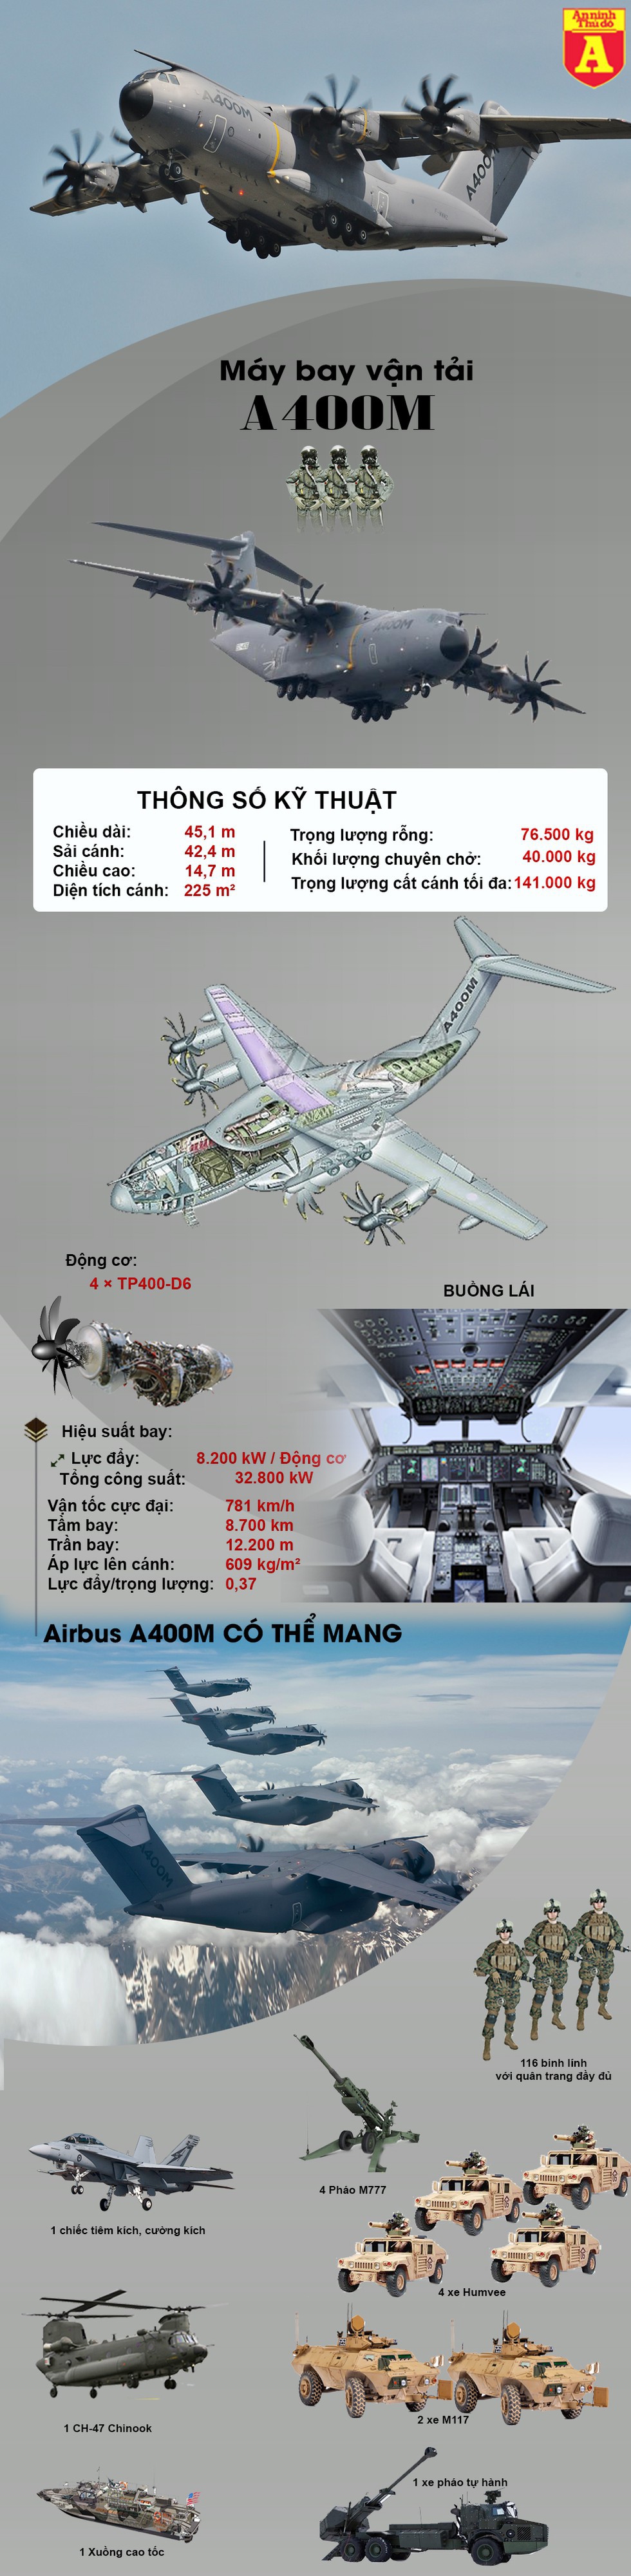 [Infographics] "Lực sĩ bay" A400M không có đối thủ trong cùng phân khúc - Ảnh 1